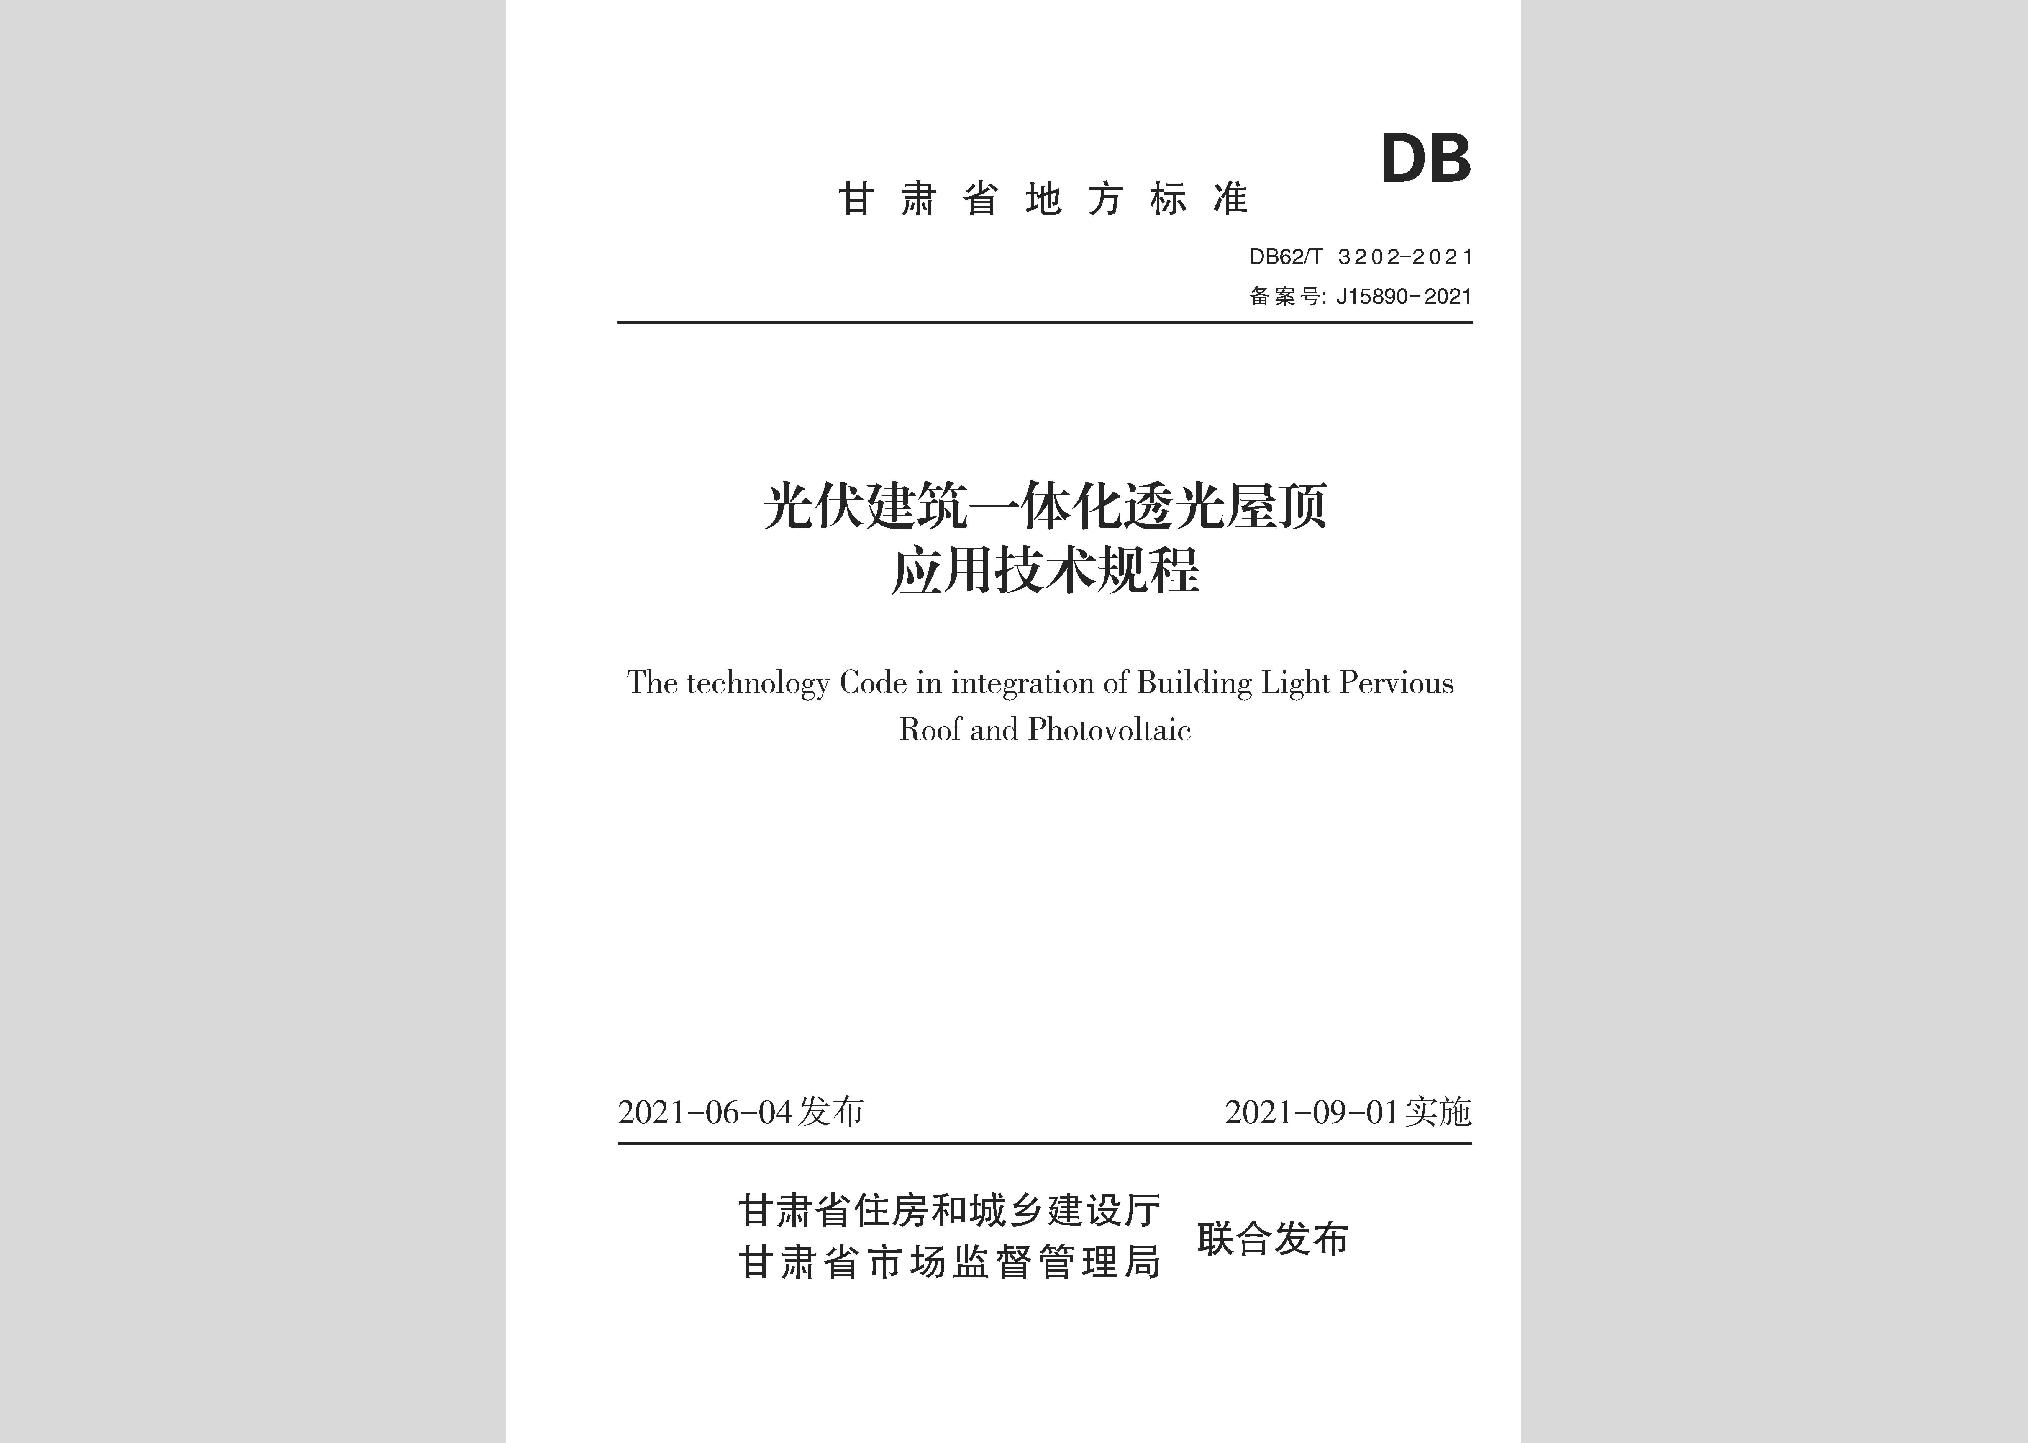 DB62/T3202-2021：光伏建筑一体化透光屋顶应用技术规程